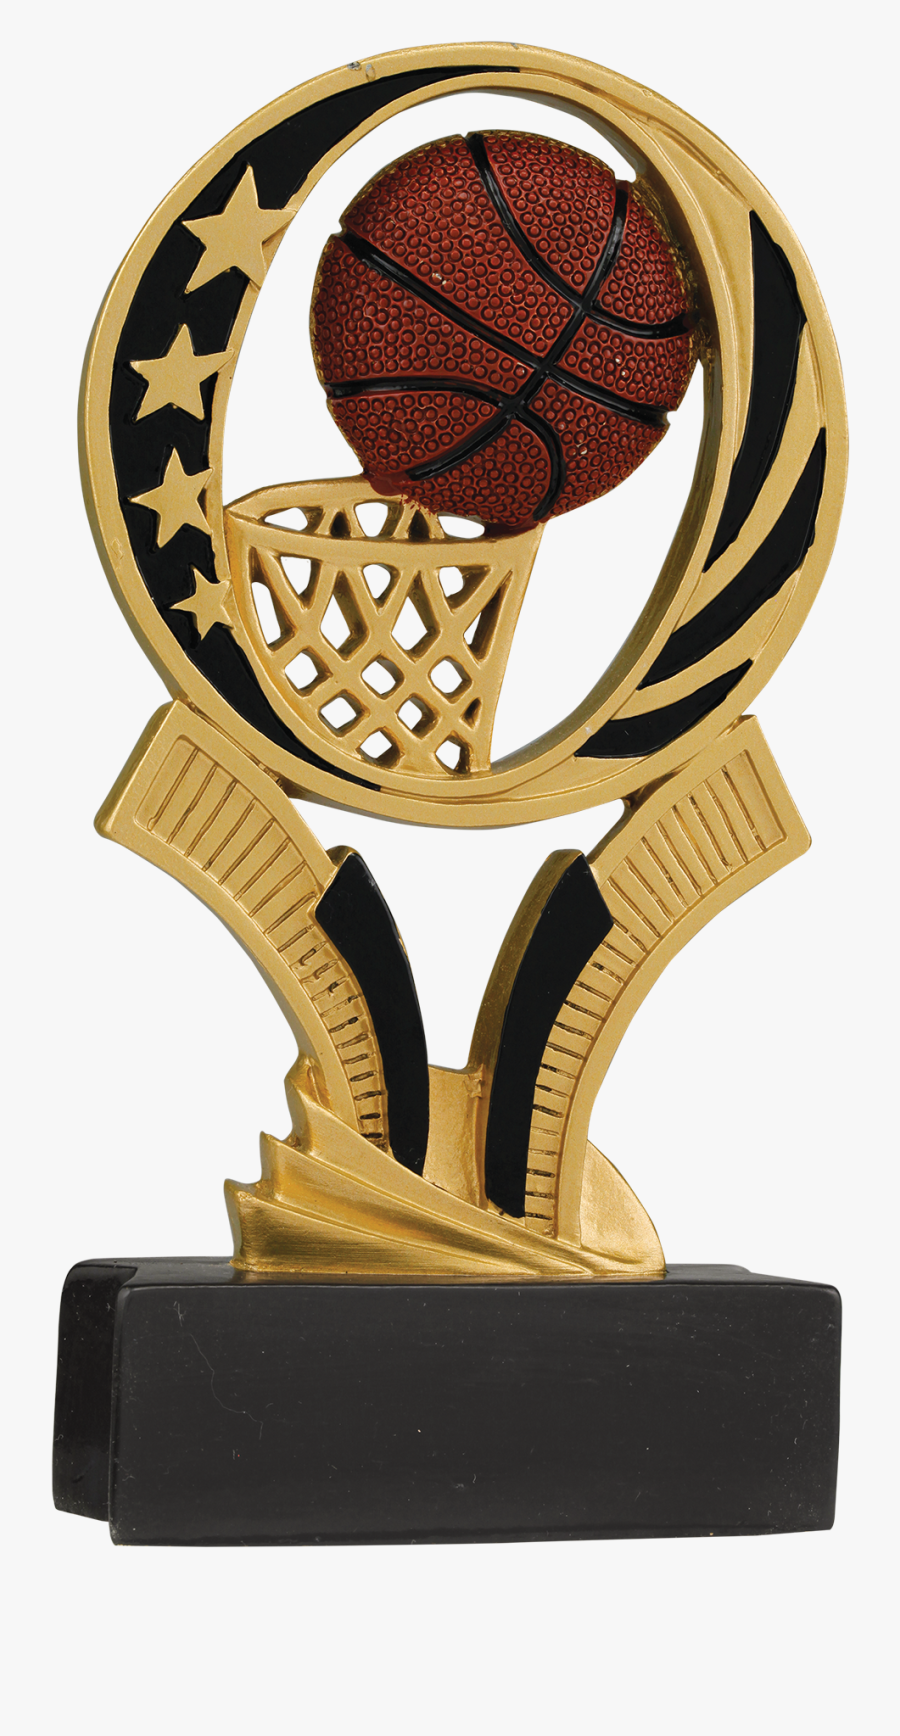 Transparent Soccer Trophy Png - Basketball Trophy Transparent, Transparent Clipart